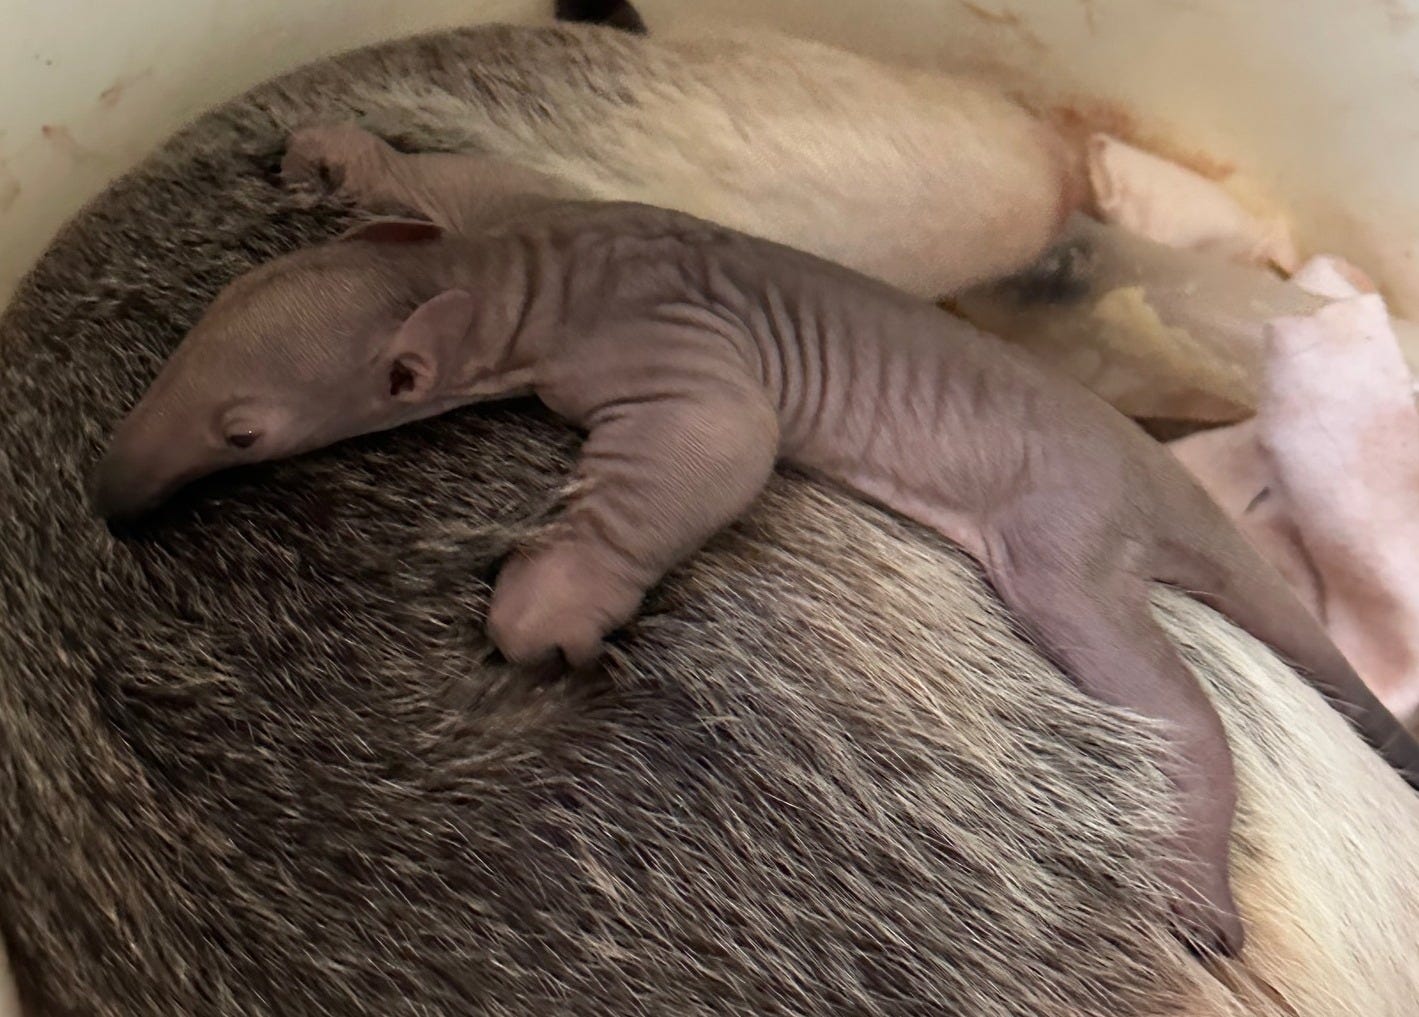 Baby tamandua at Cincinnati Zoo dies days after birth